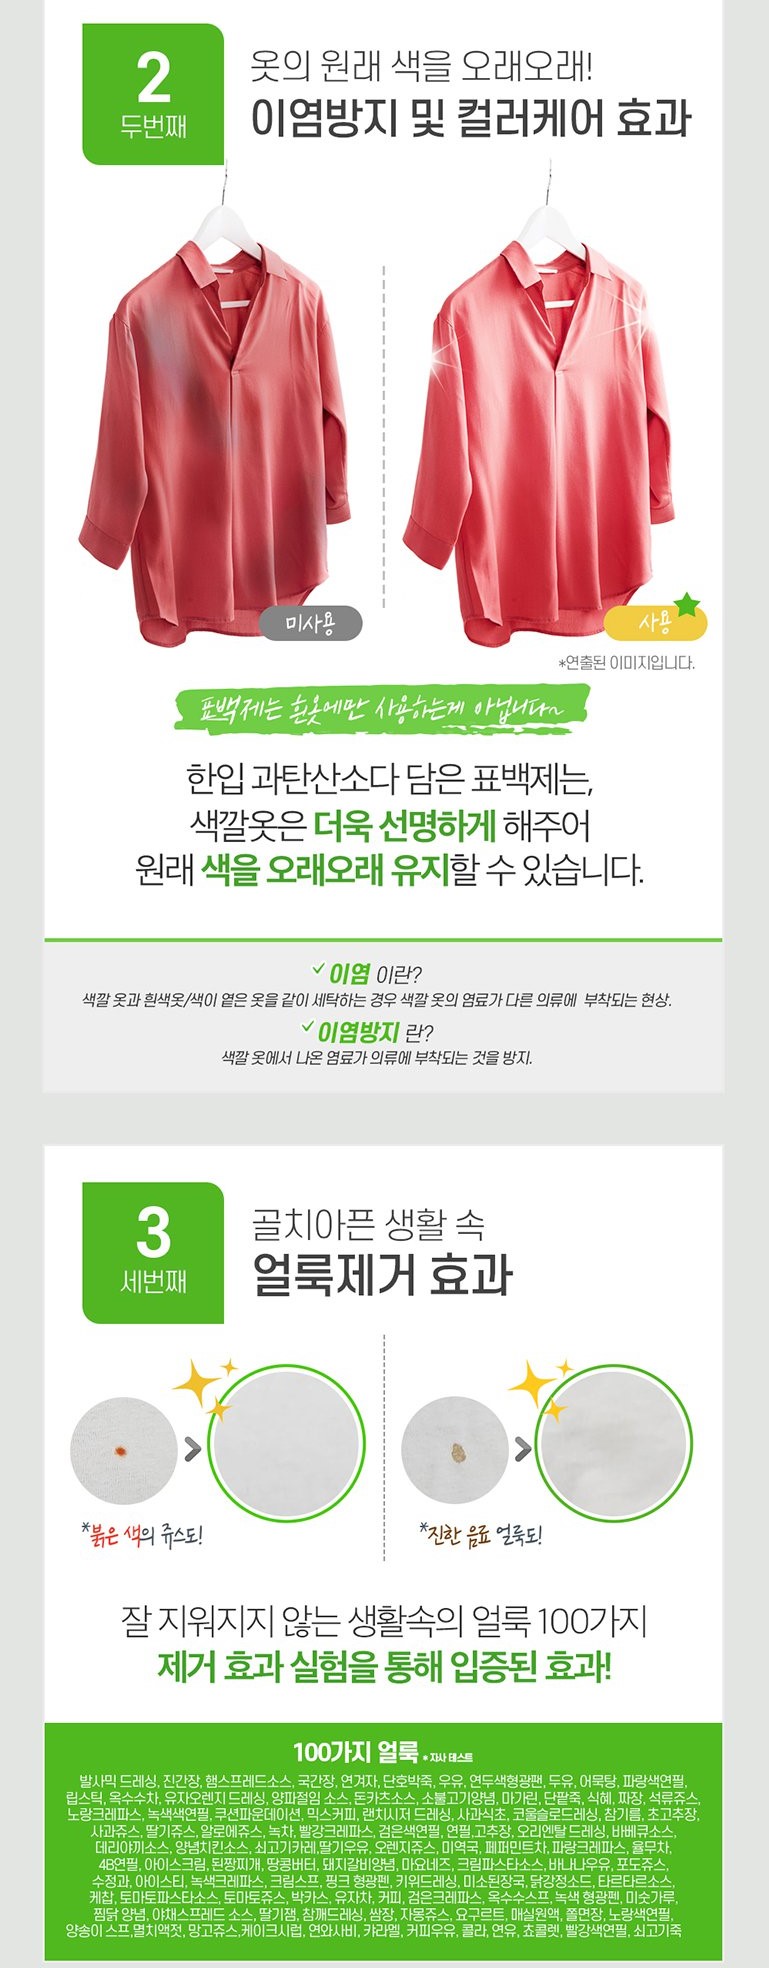 韓國食品-[LG 엘지] 한입 과탄산소다 담은 표백제 2kg